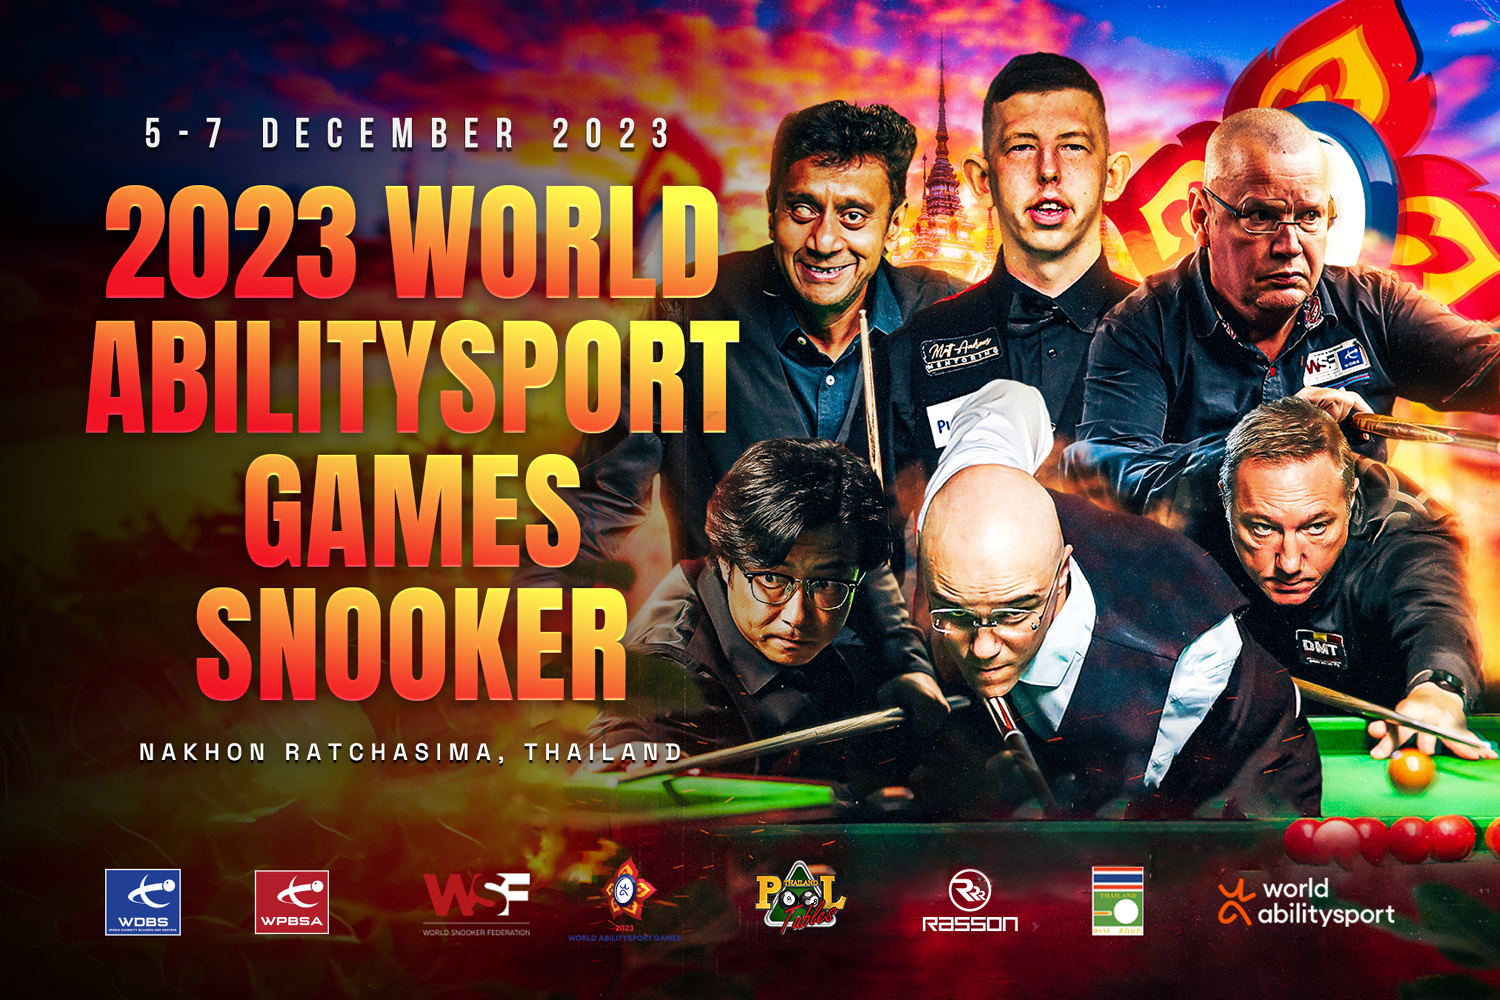 World Abilitysport Games snooker banner 